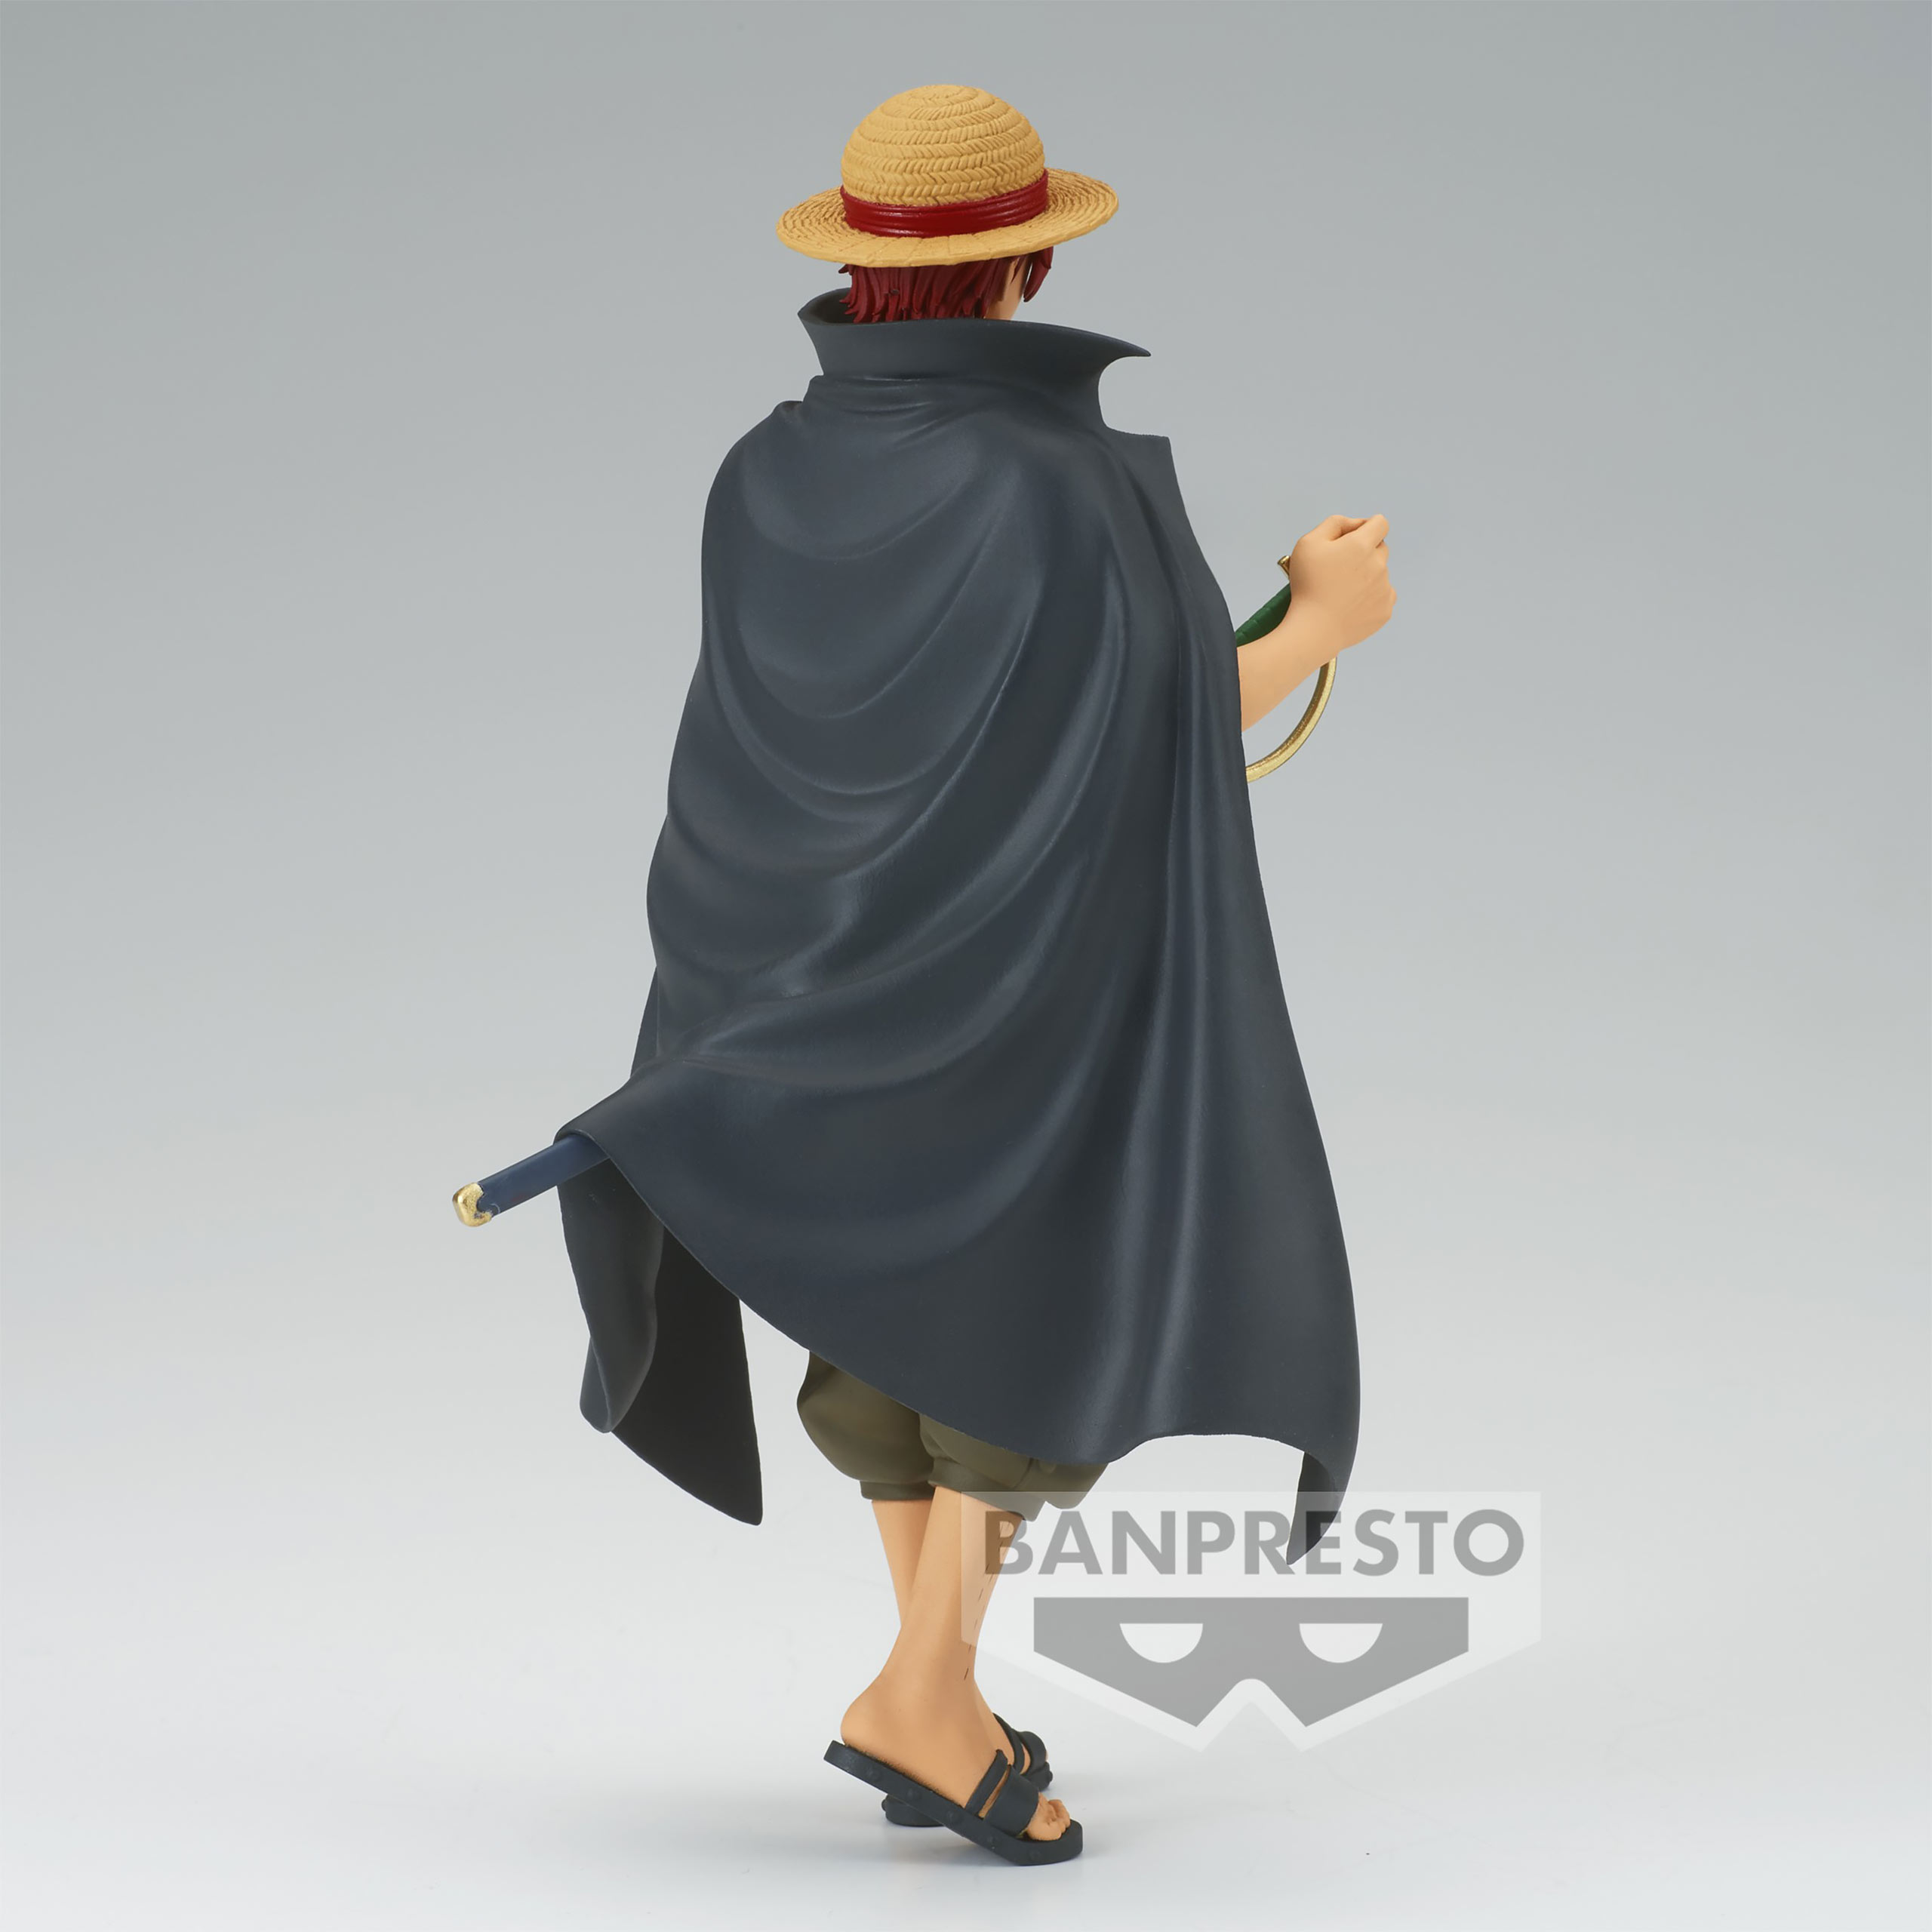 One Piece - Shanks Figur DXF Grandline Series